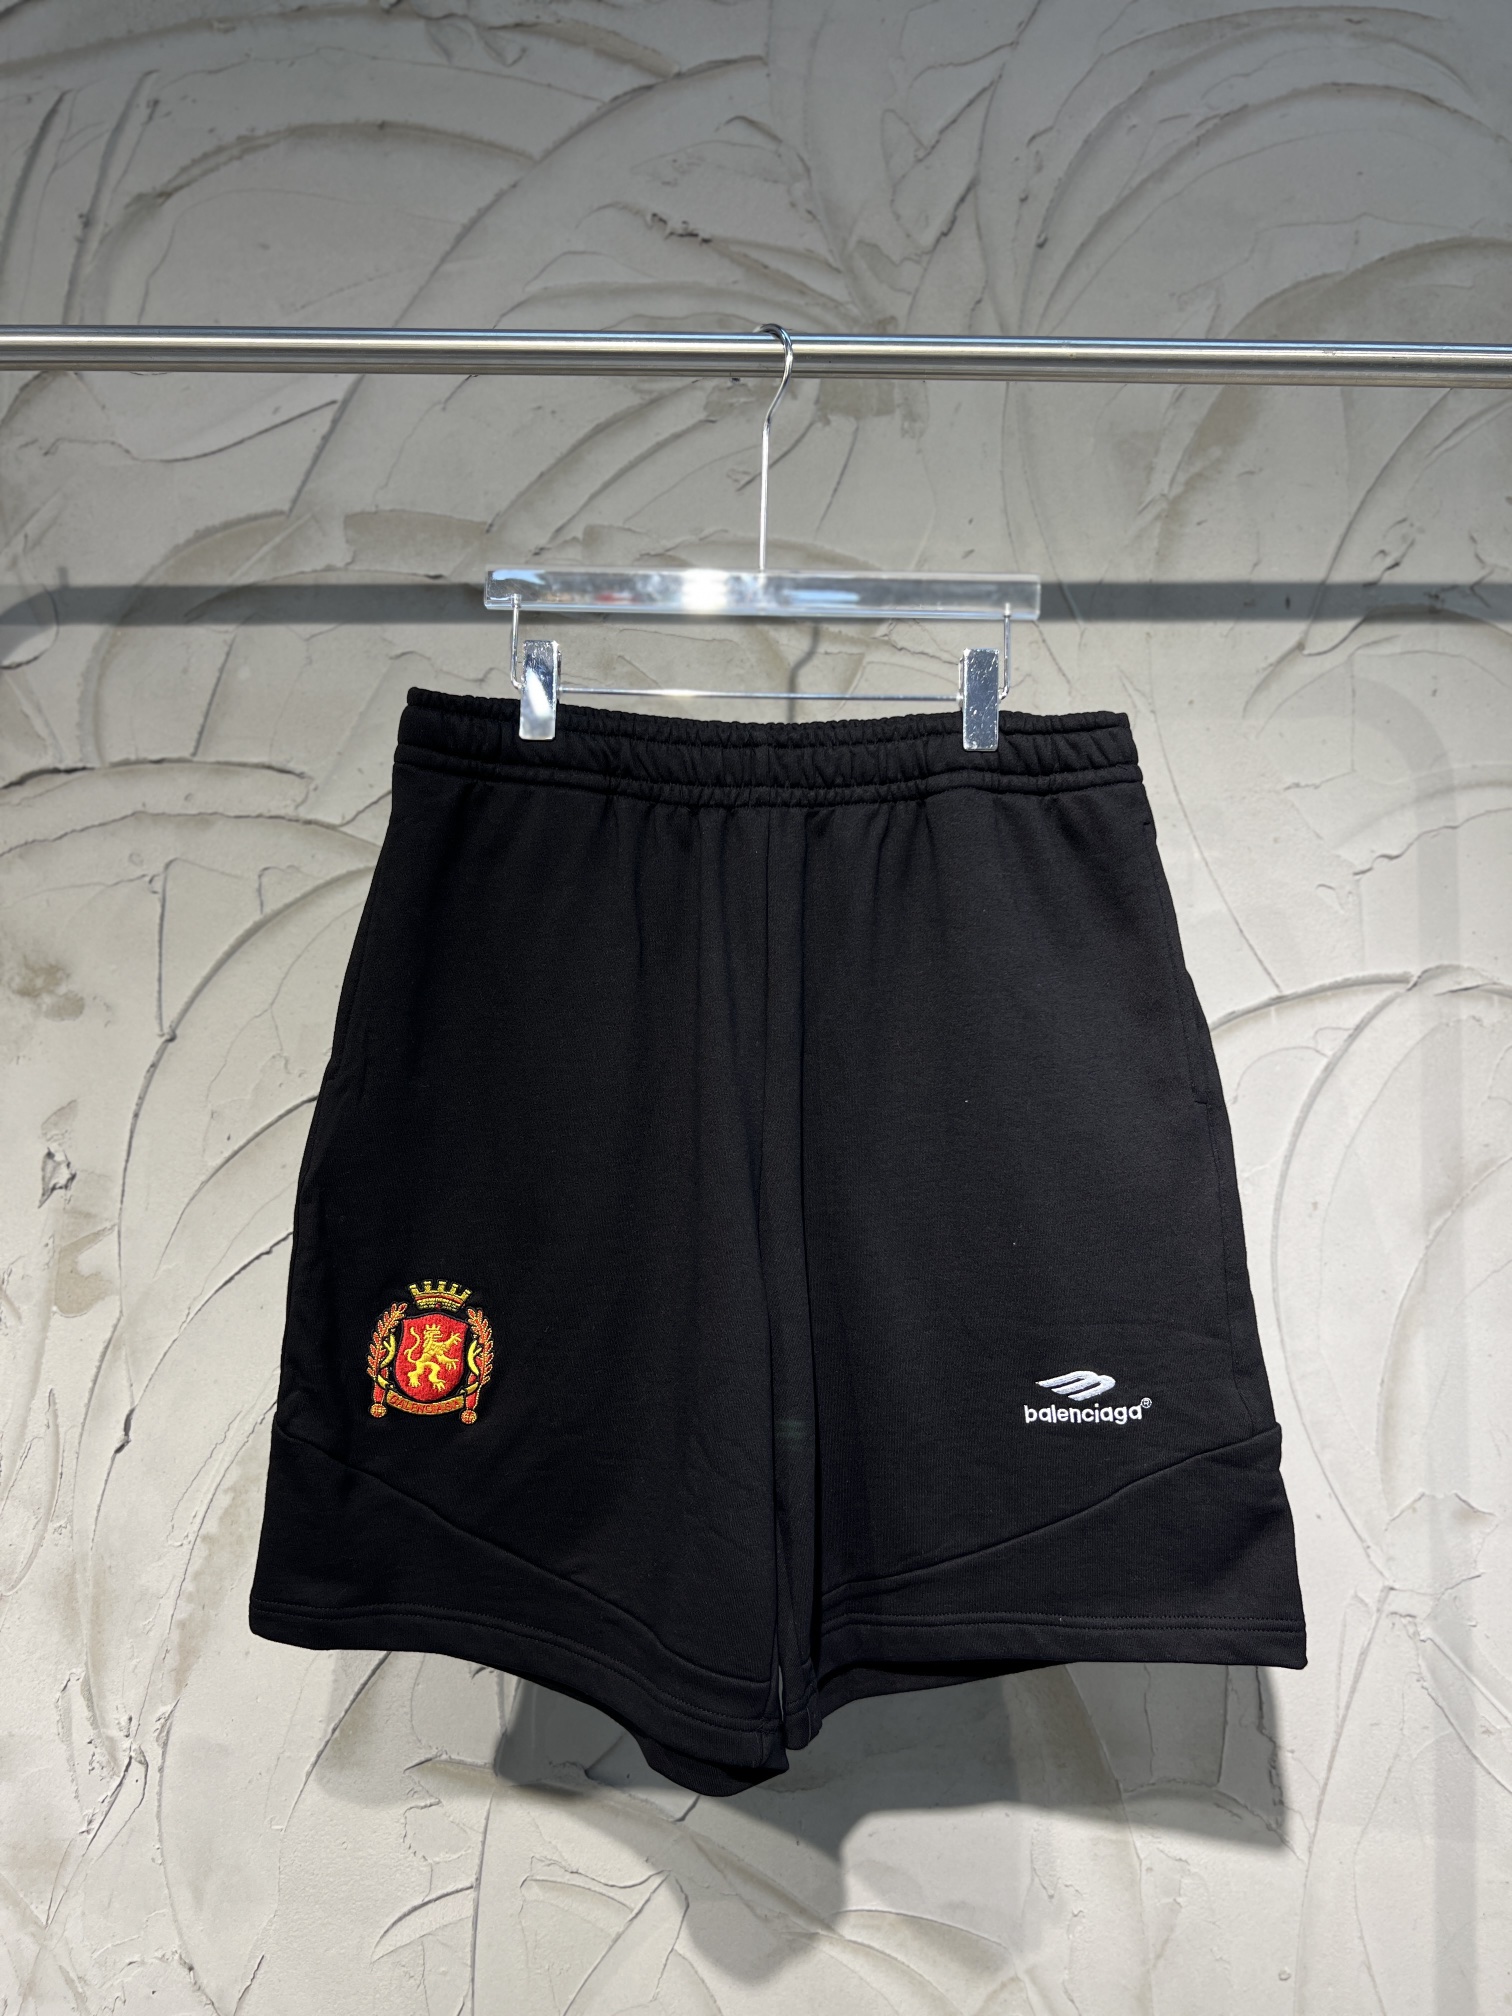 Balenciaga Clothing Shorts Black Embroidery Unisex Sweatpants